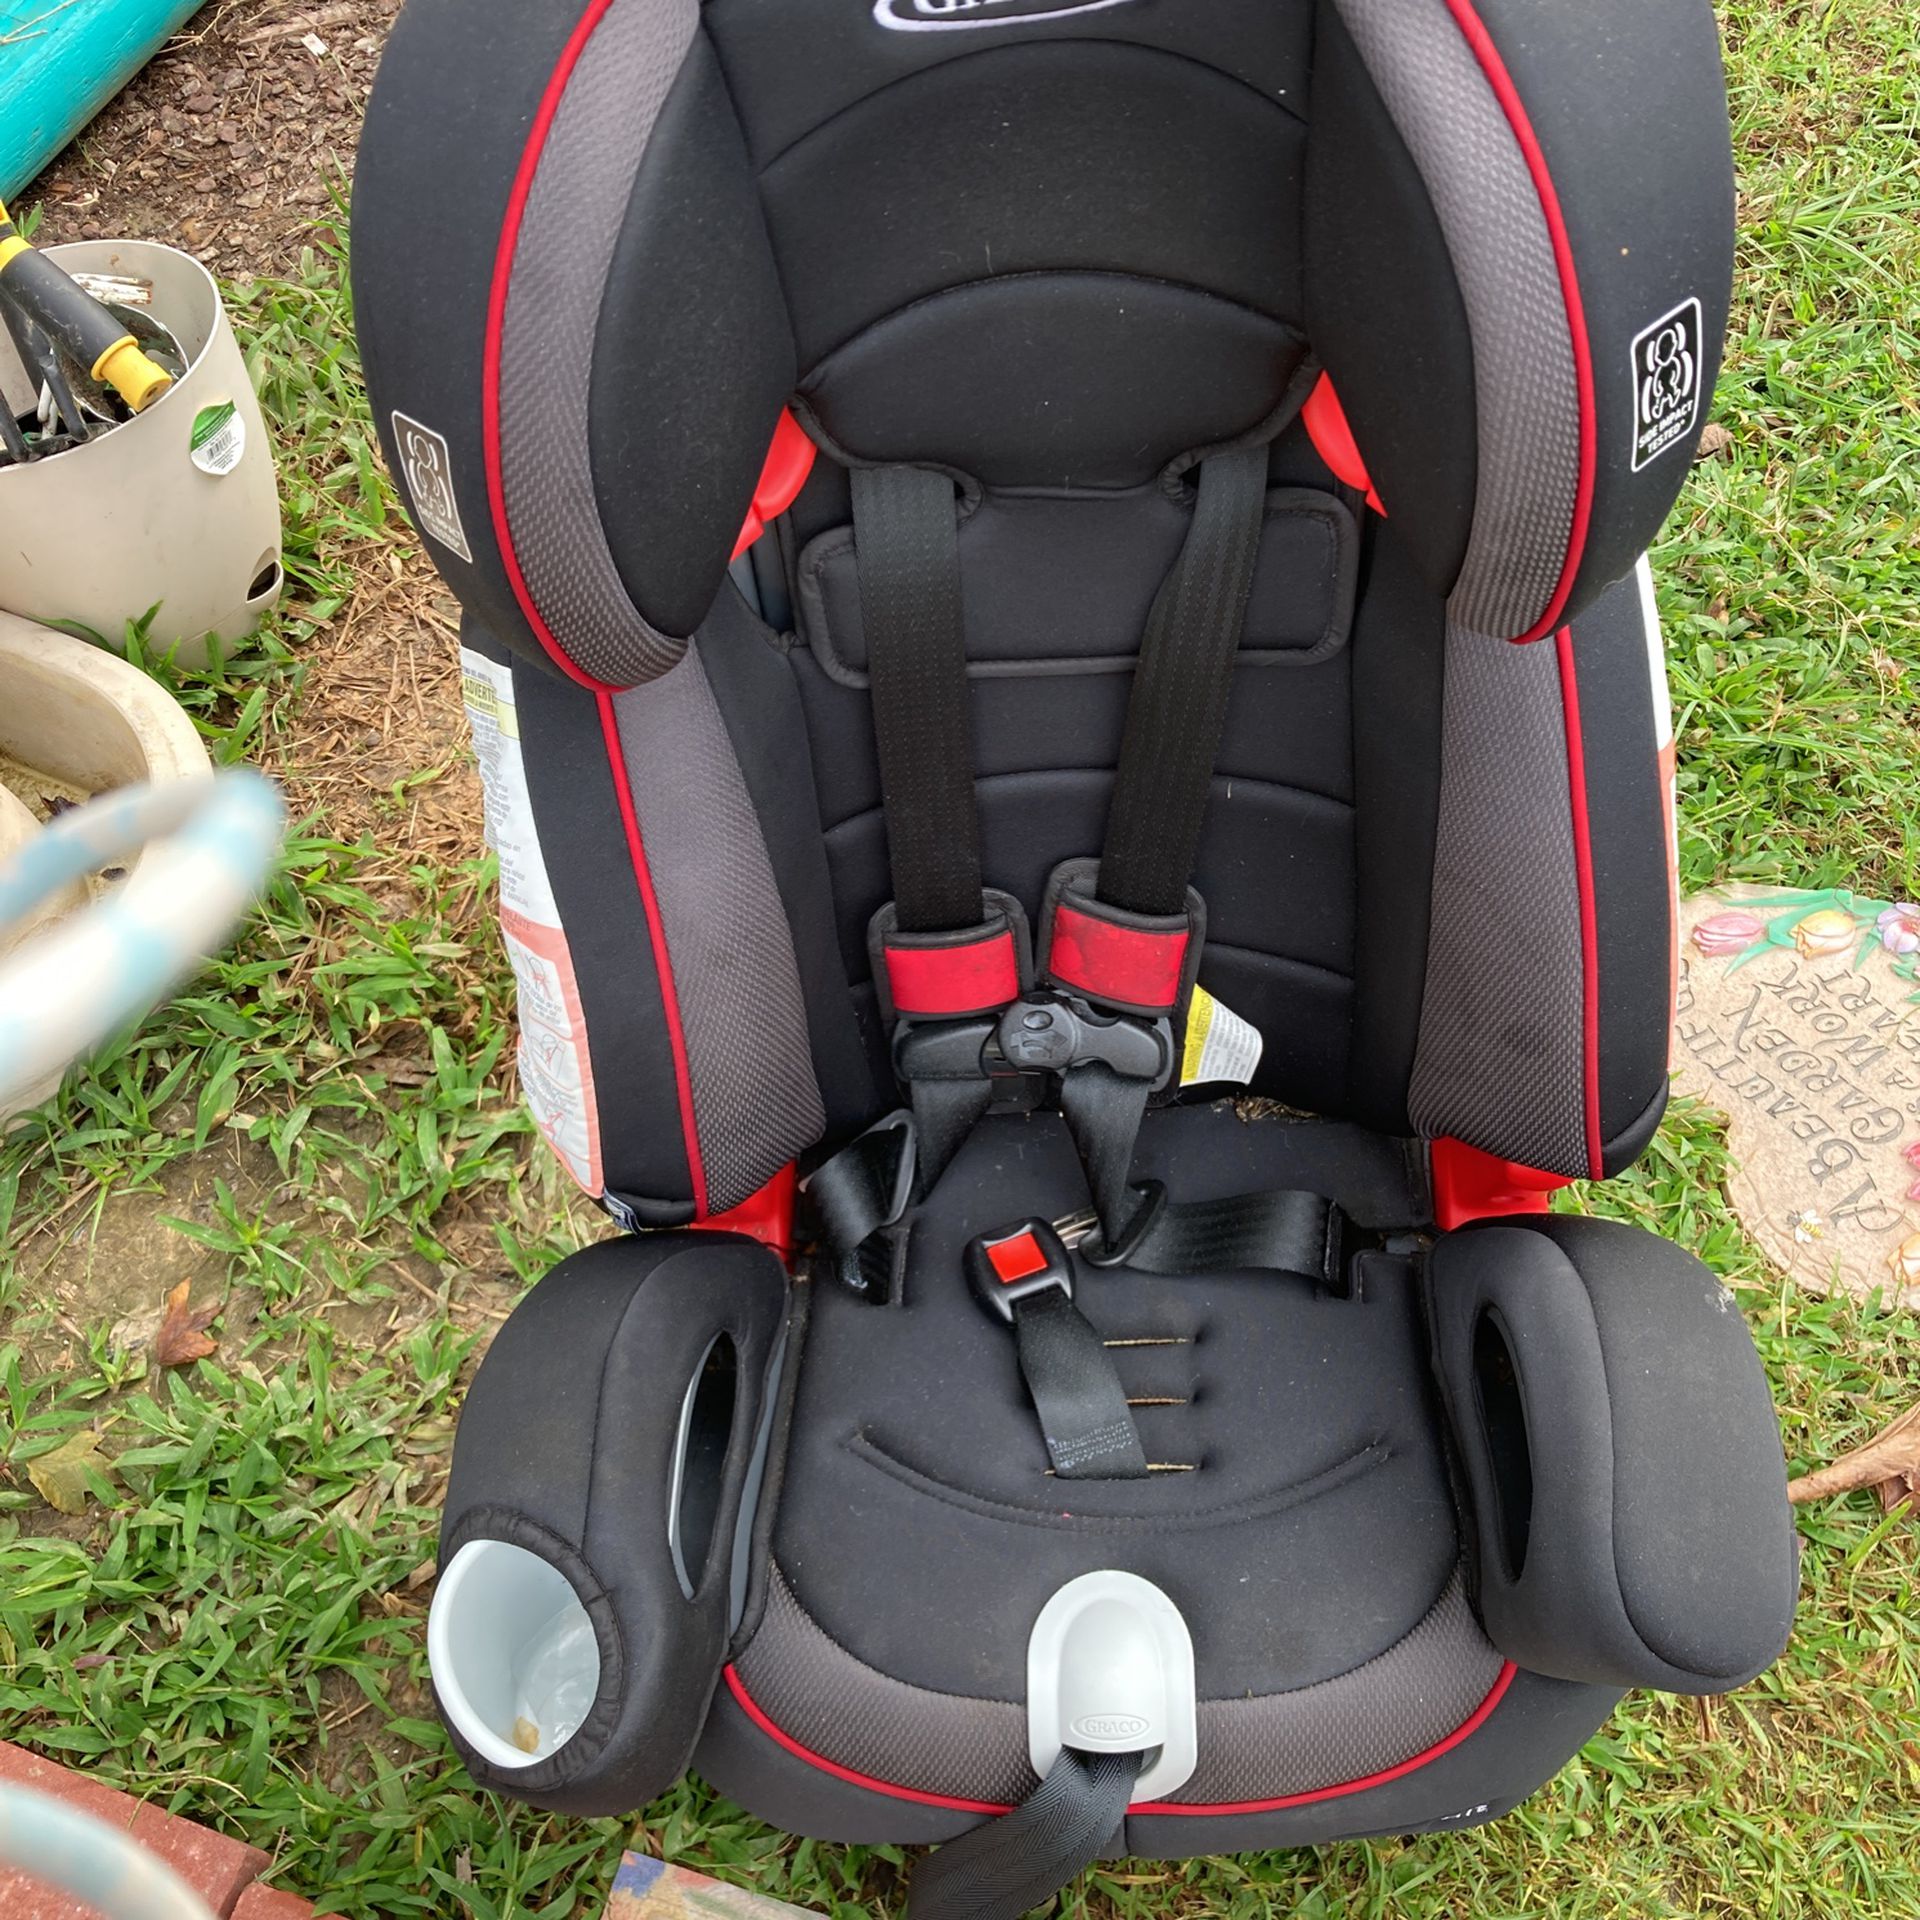 Graco Toddler Car Seat